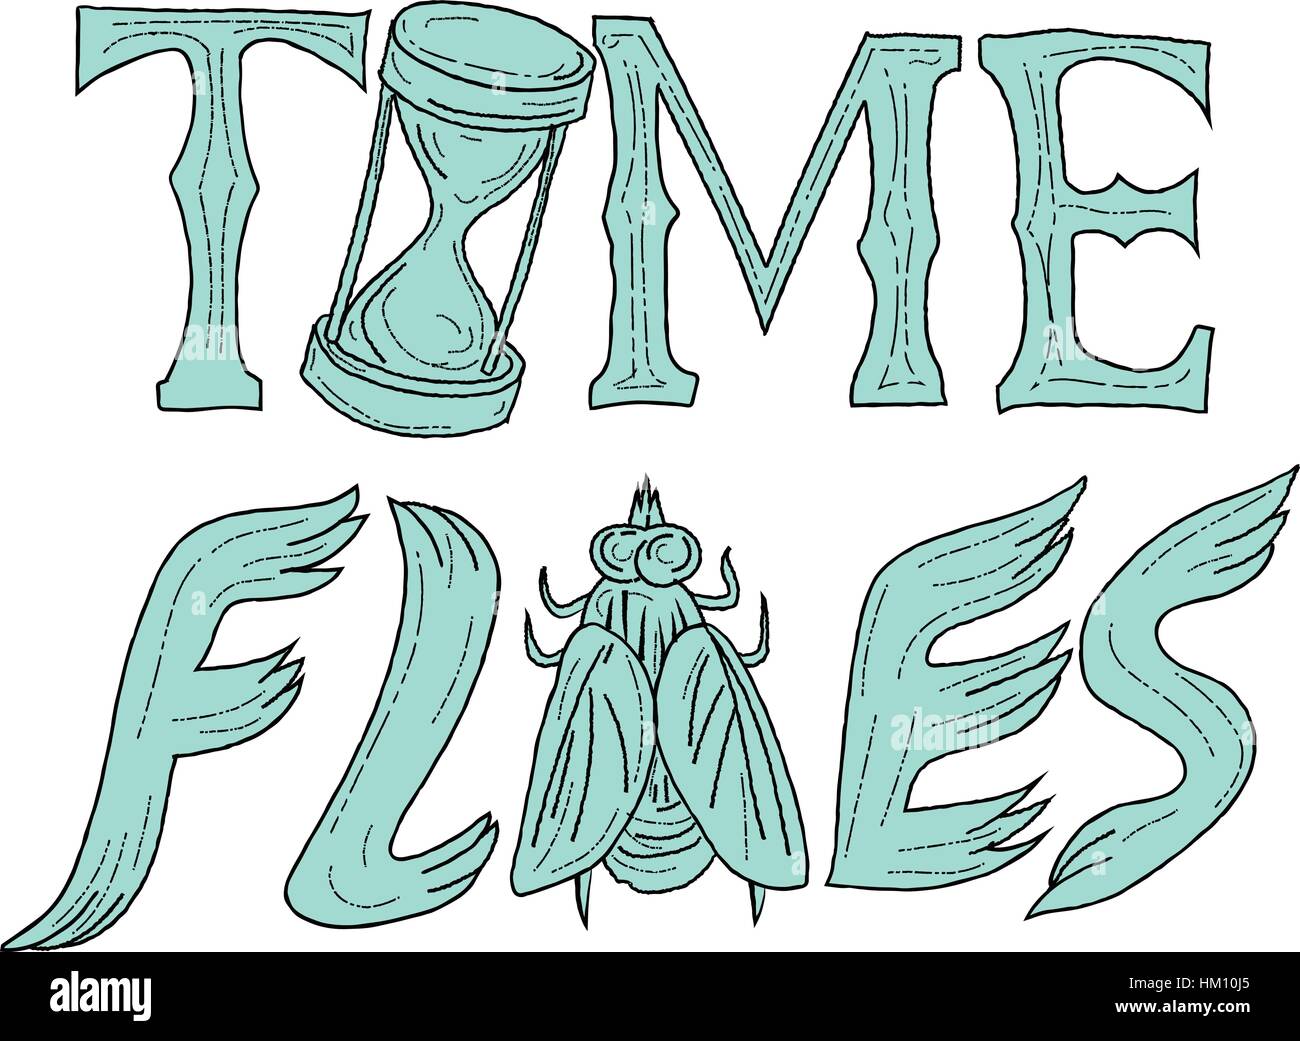 Zeichnung Skizze Stil Illustration der Worte Text Time Flies mit Sanduhr und fliegen auf isolierten weißen Hintergrund. Stock Vektor